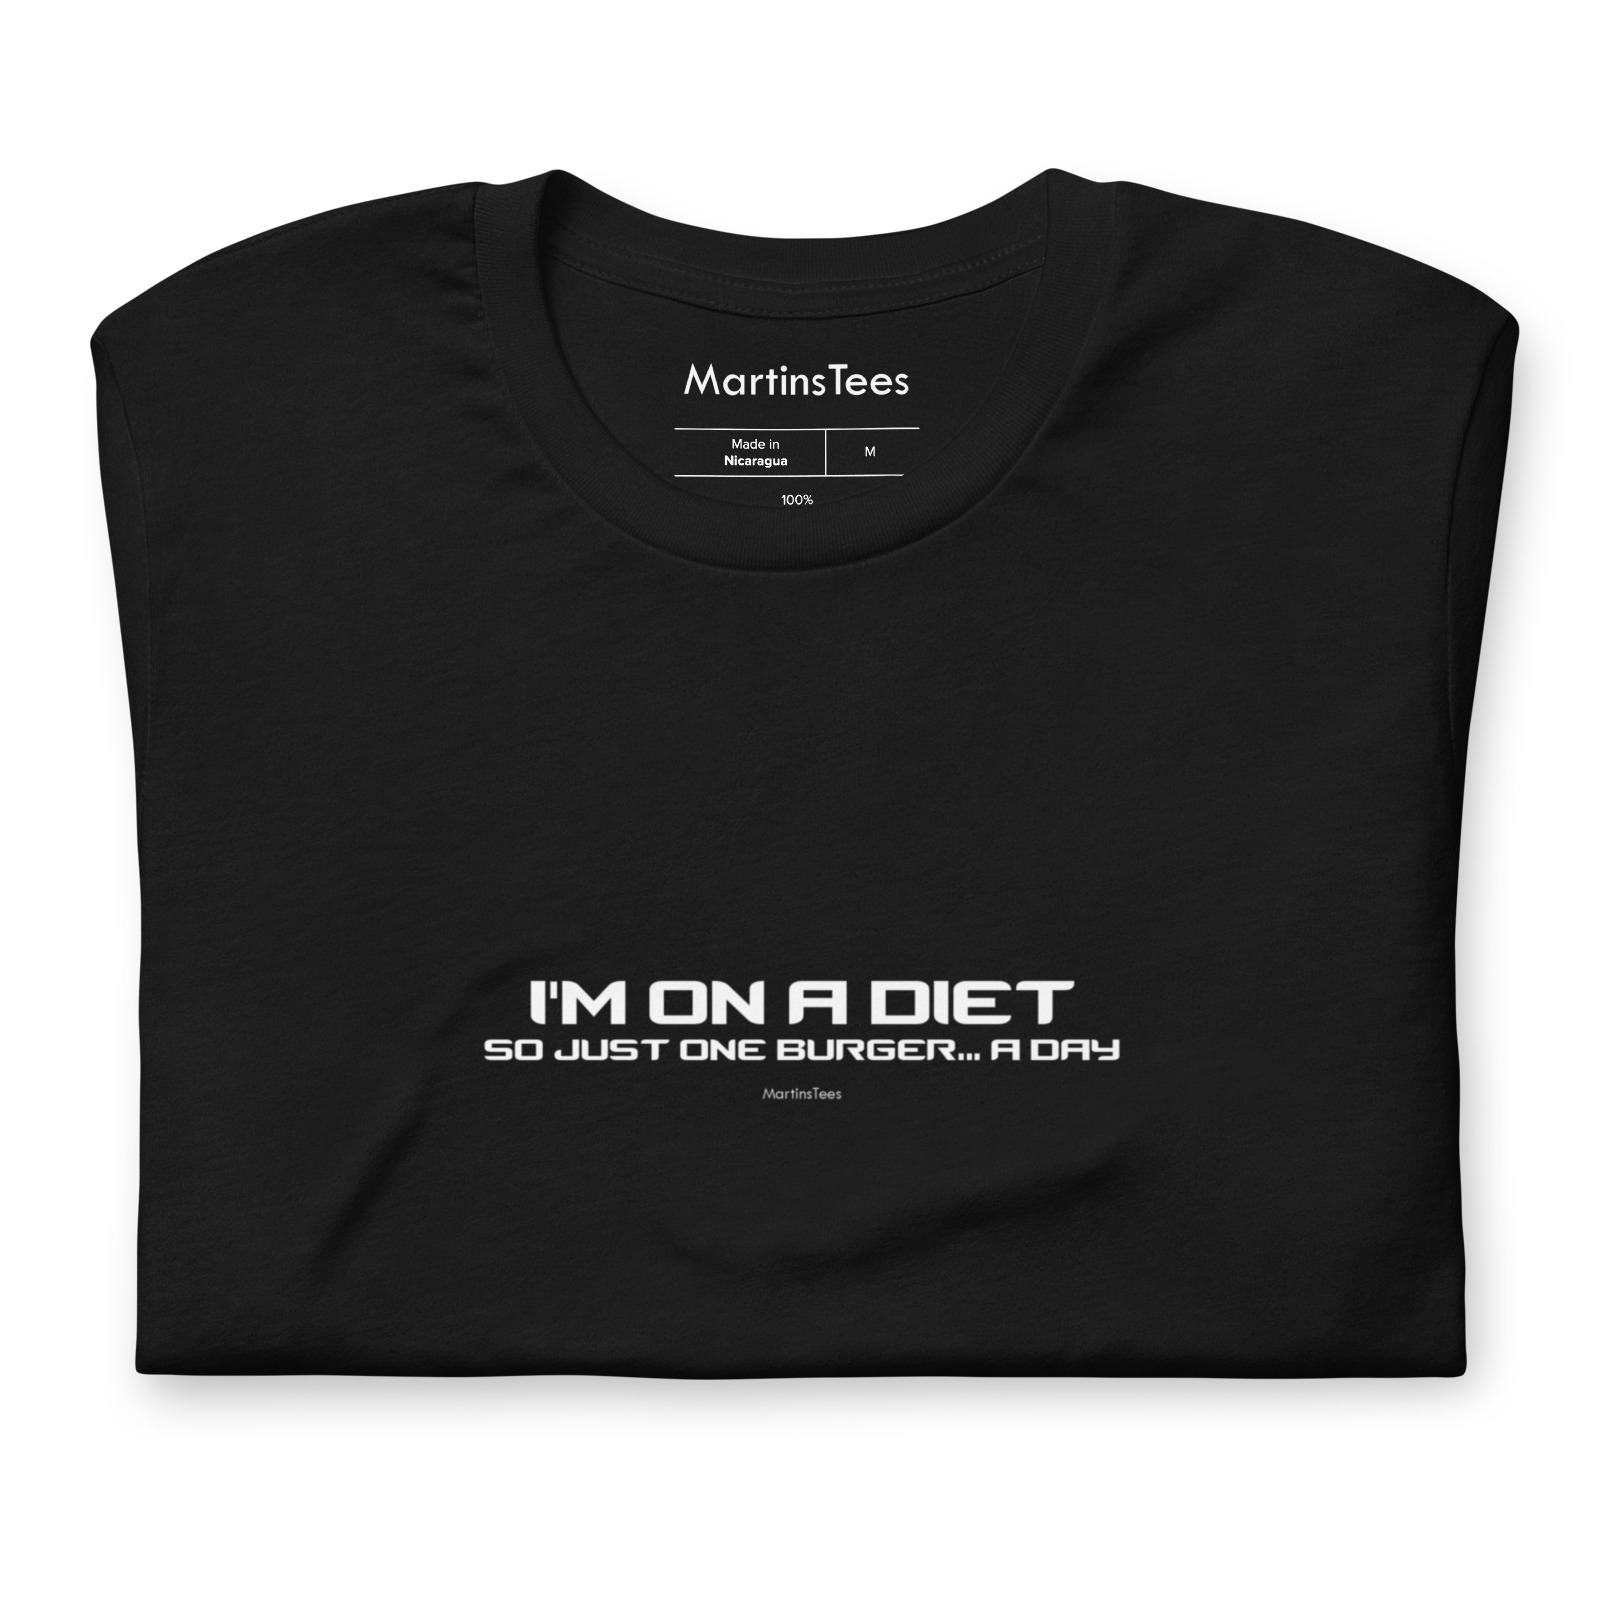 T-shirt: I'M ON A DIET - SO JUST ONE BURGER... A DAY